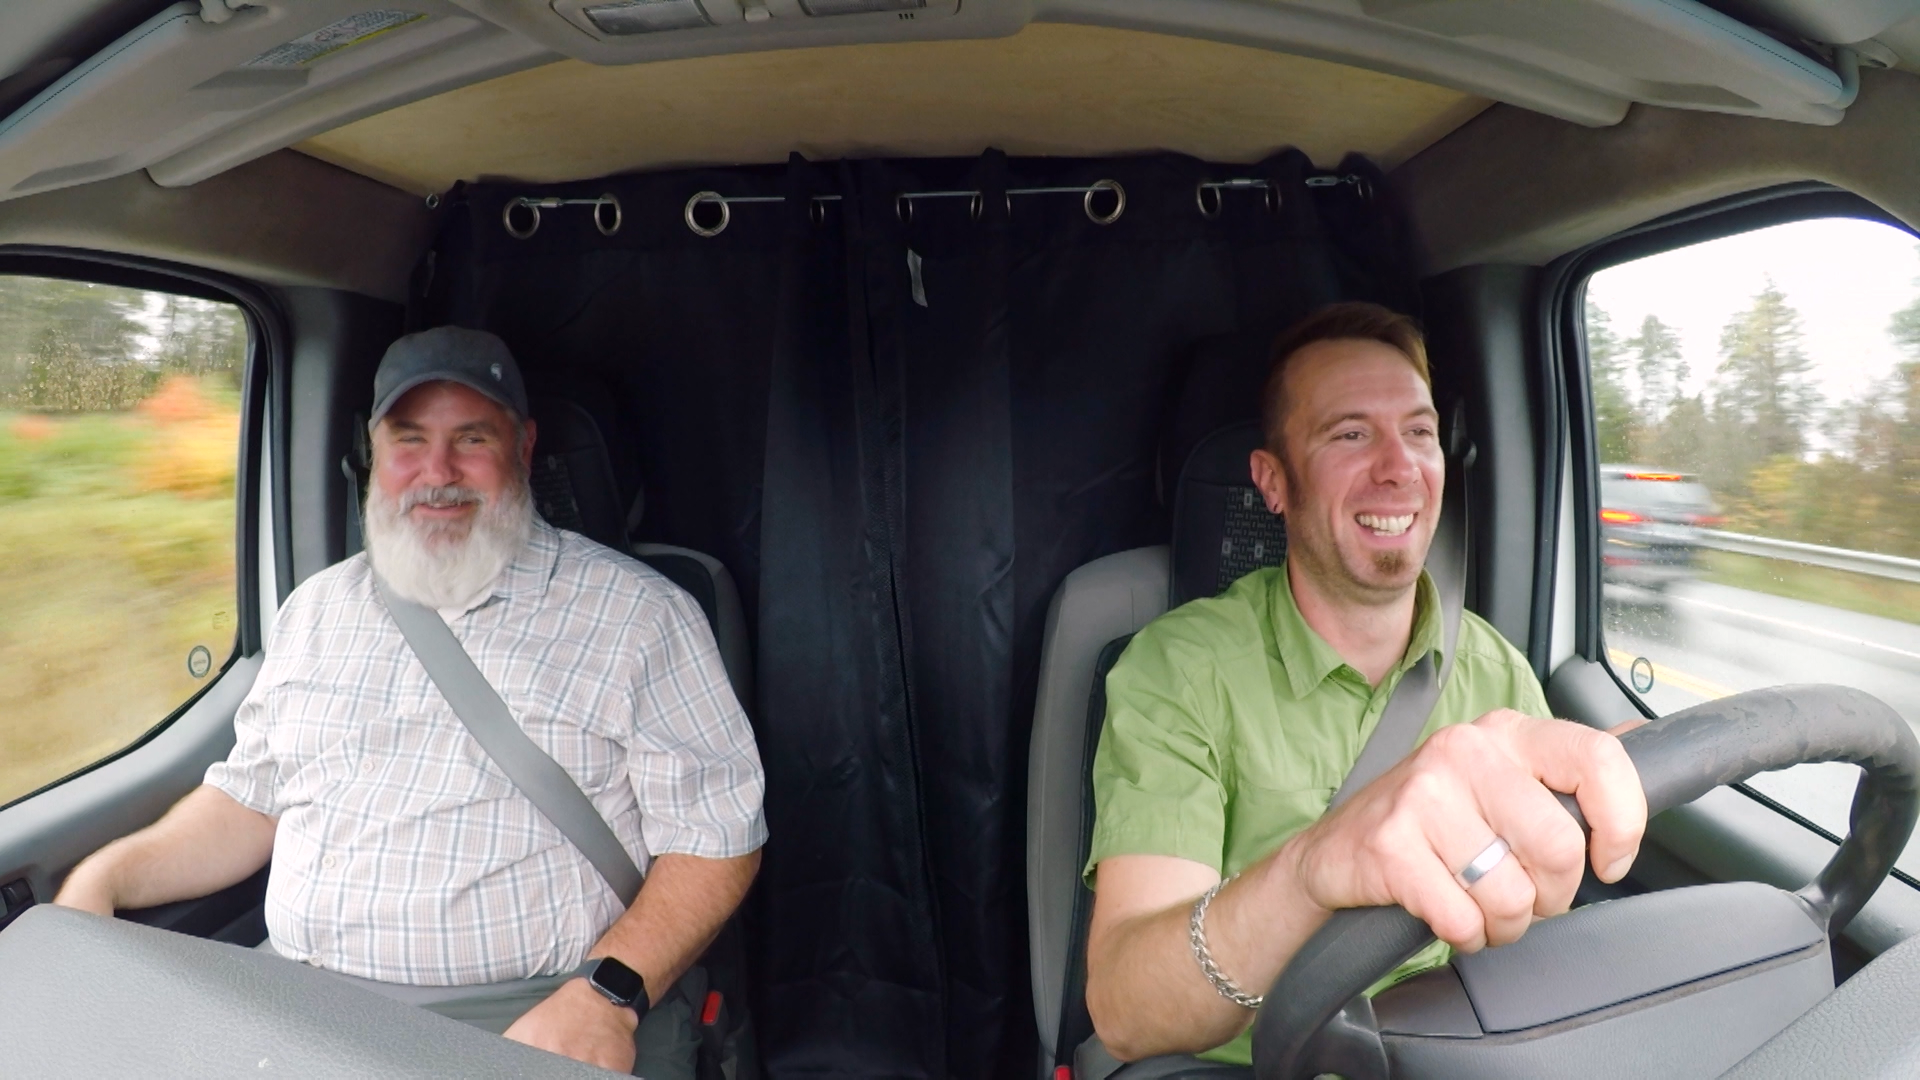 Two men ride in a van.